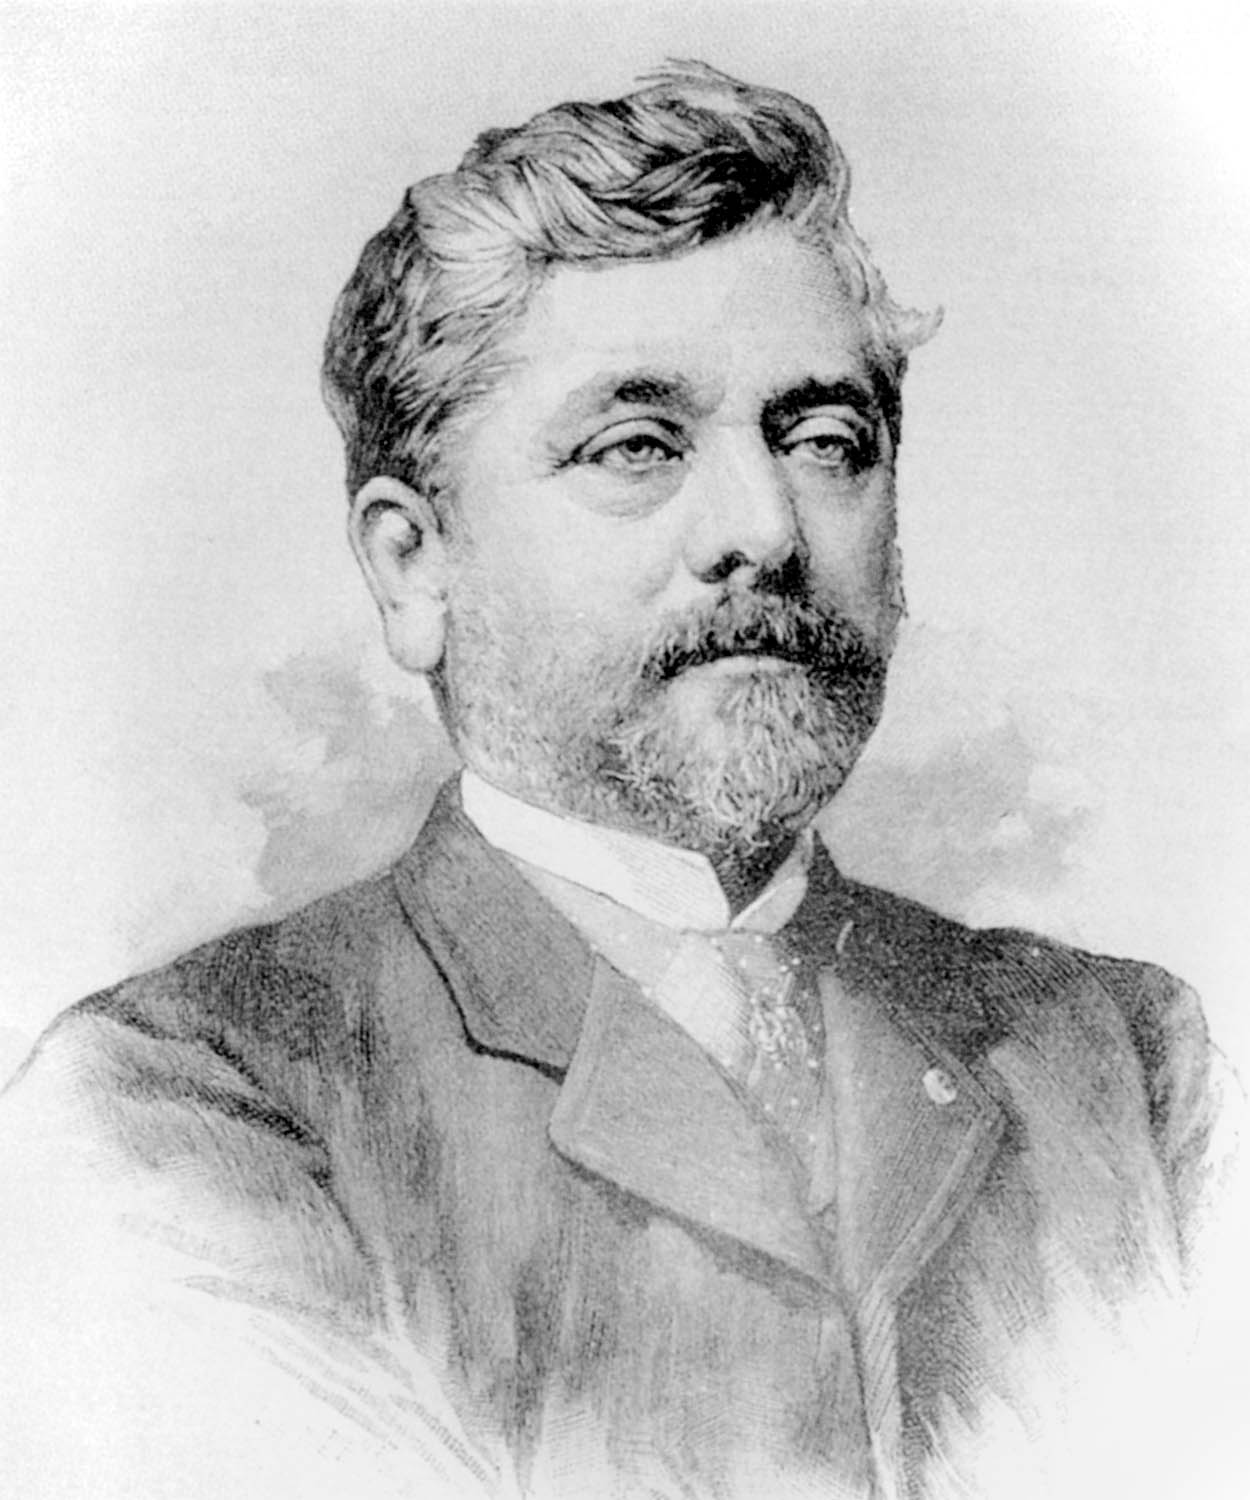  Biografía de Gustave Eiffel